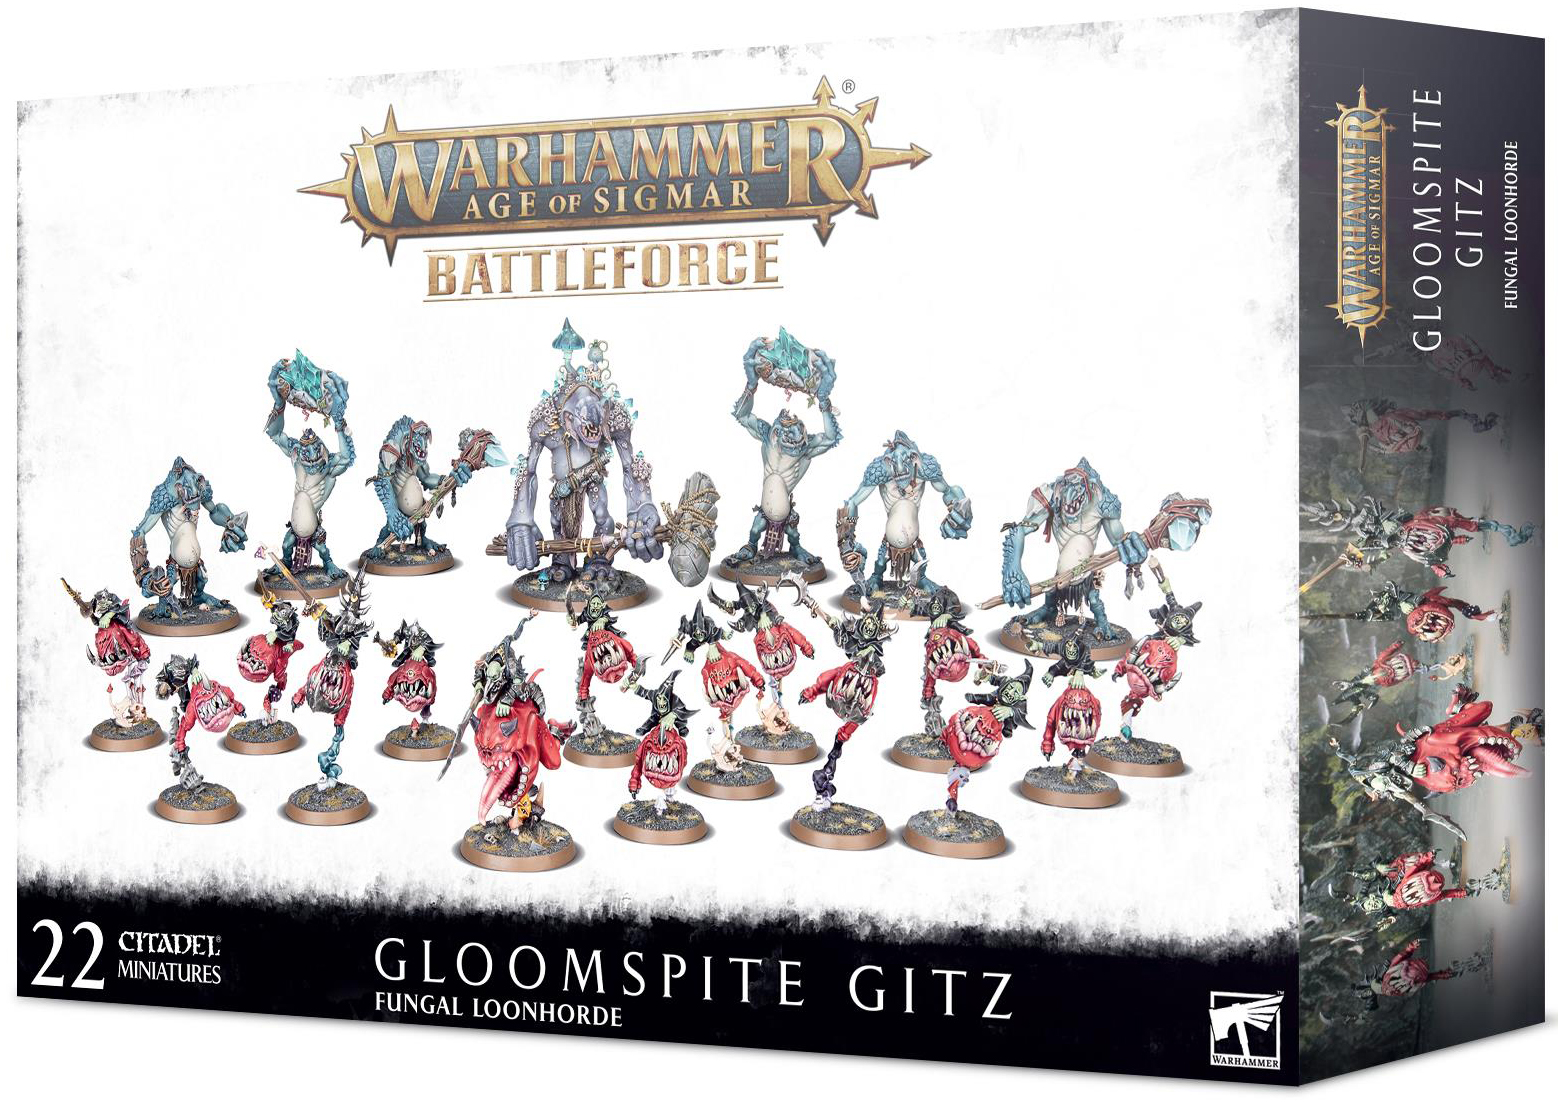  Warhammer Age of Sigmar: Gloomspite Gitz - Fungal Loonhorde  (89-53) 